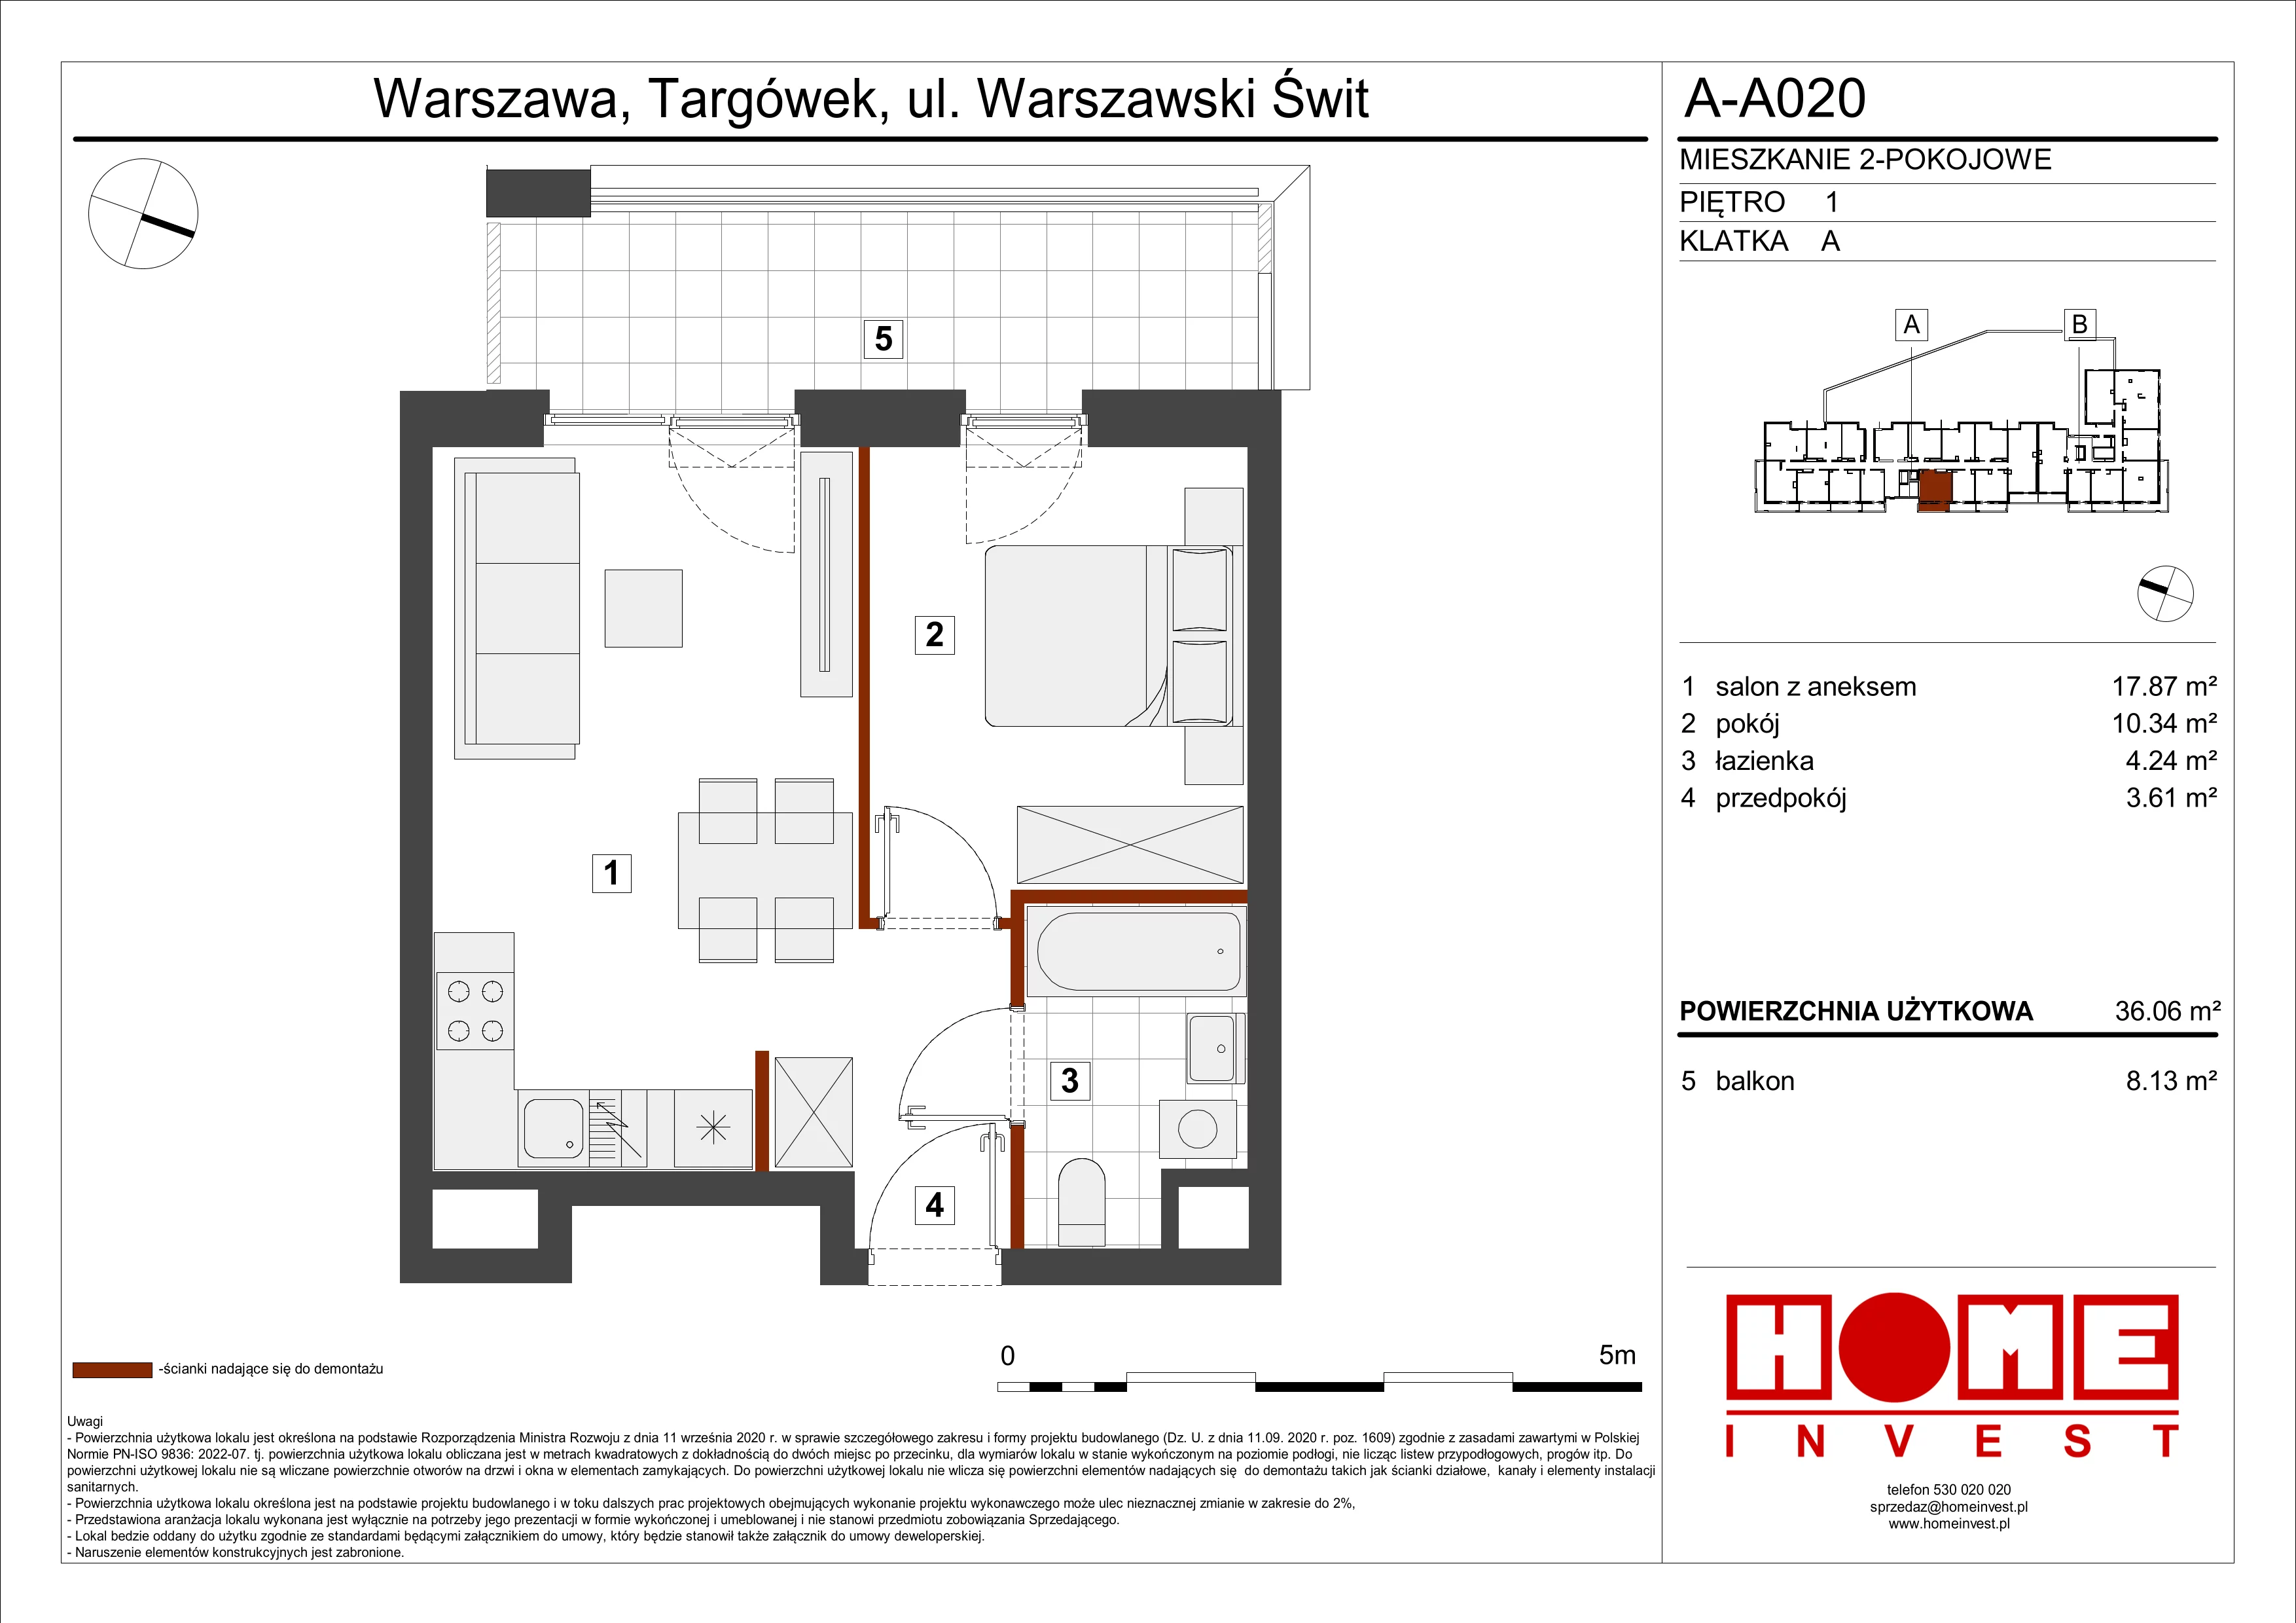 Mieszkanie 36,06 m², piętro 1, oferta nr A-A020, Warszawski Świt, Warszawa, Targówek, Bródno, ul. Warszawski Świt 5